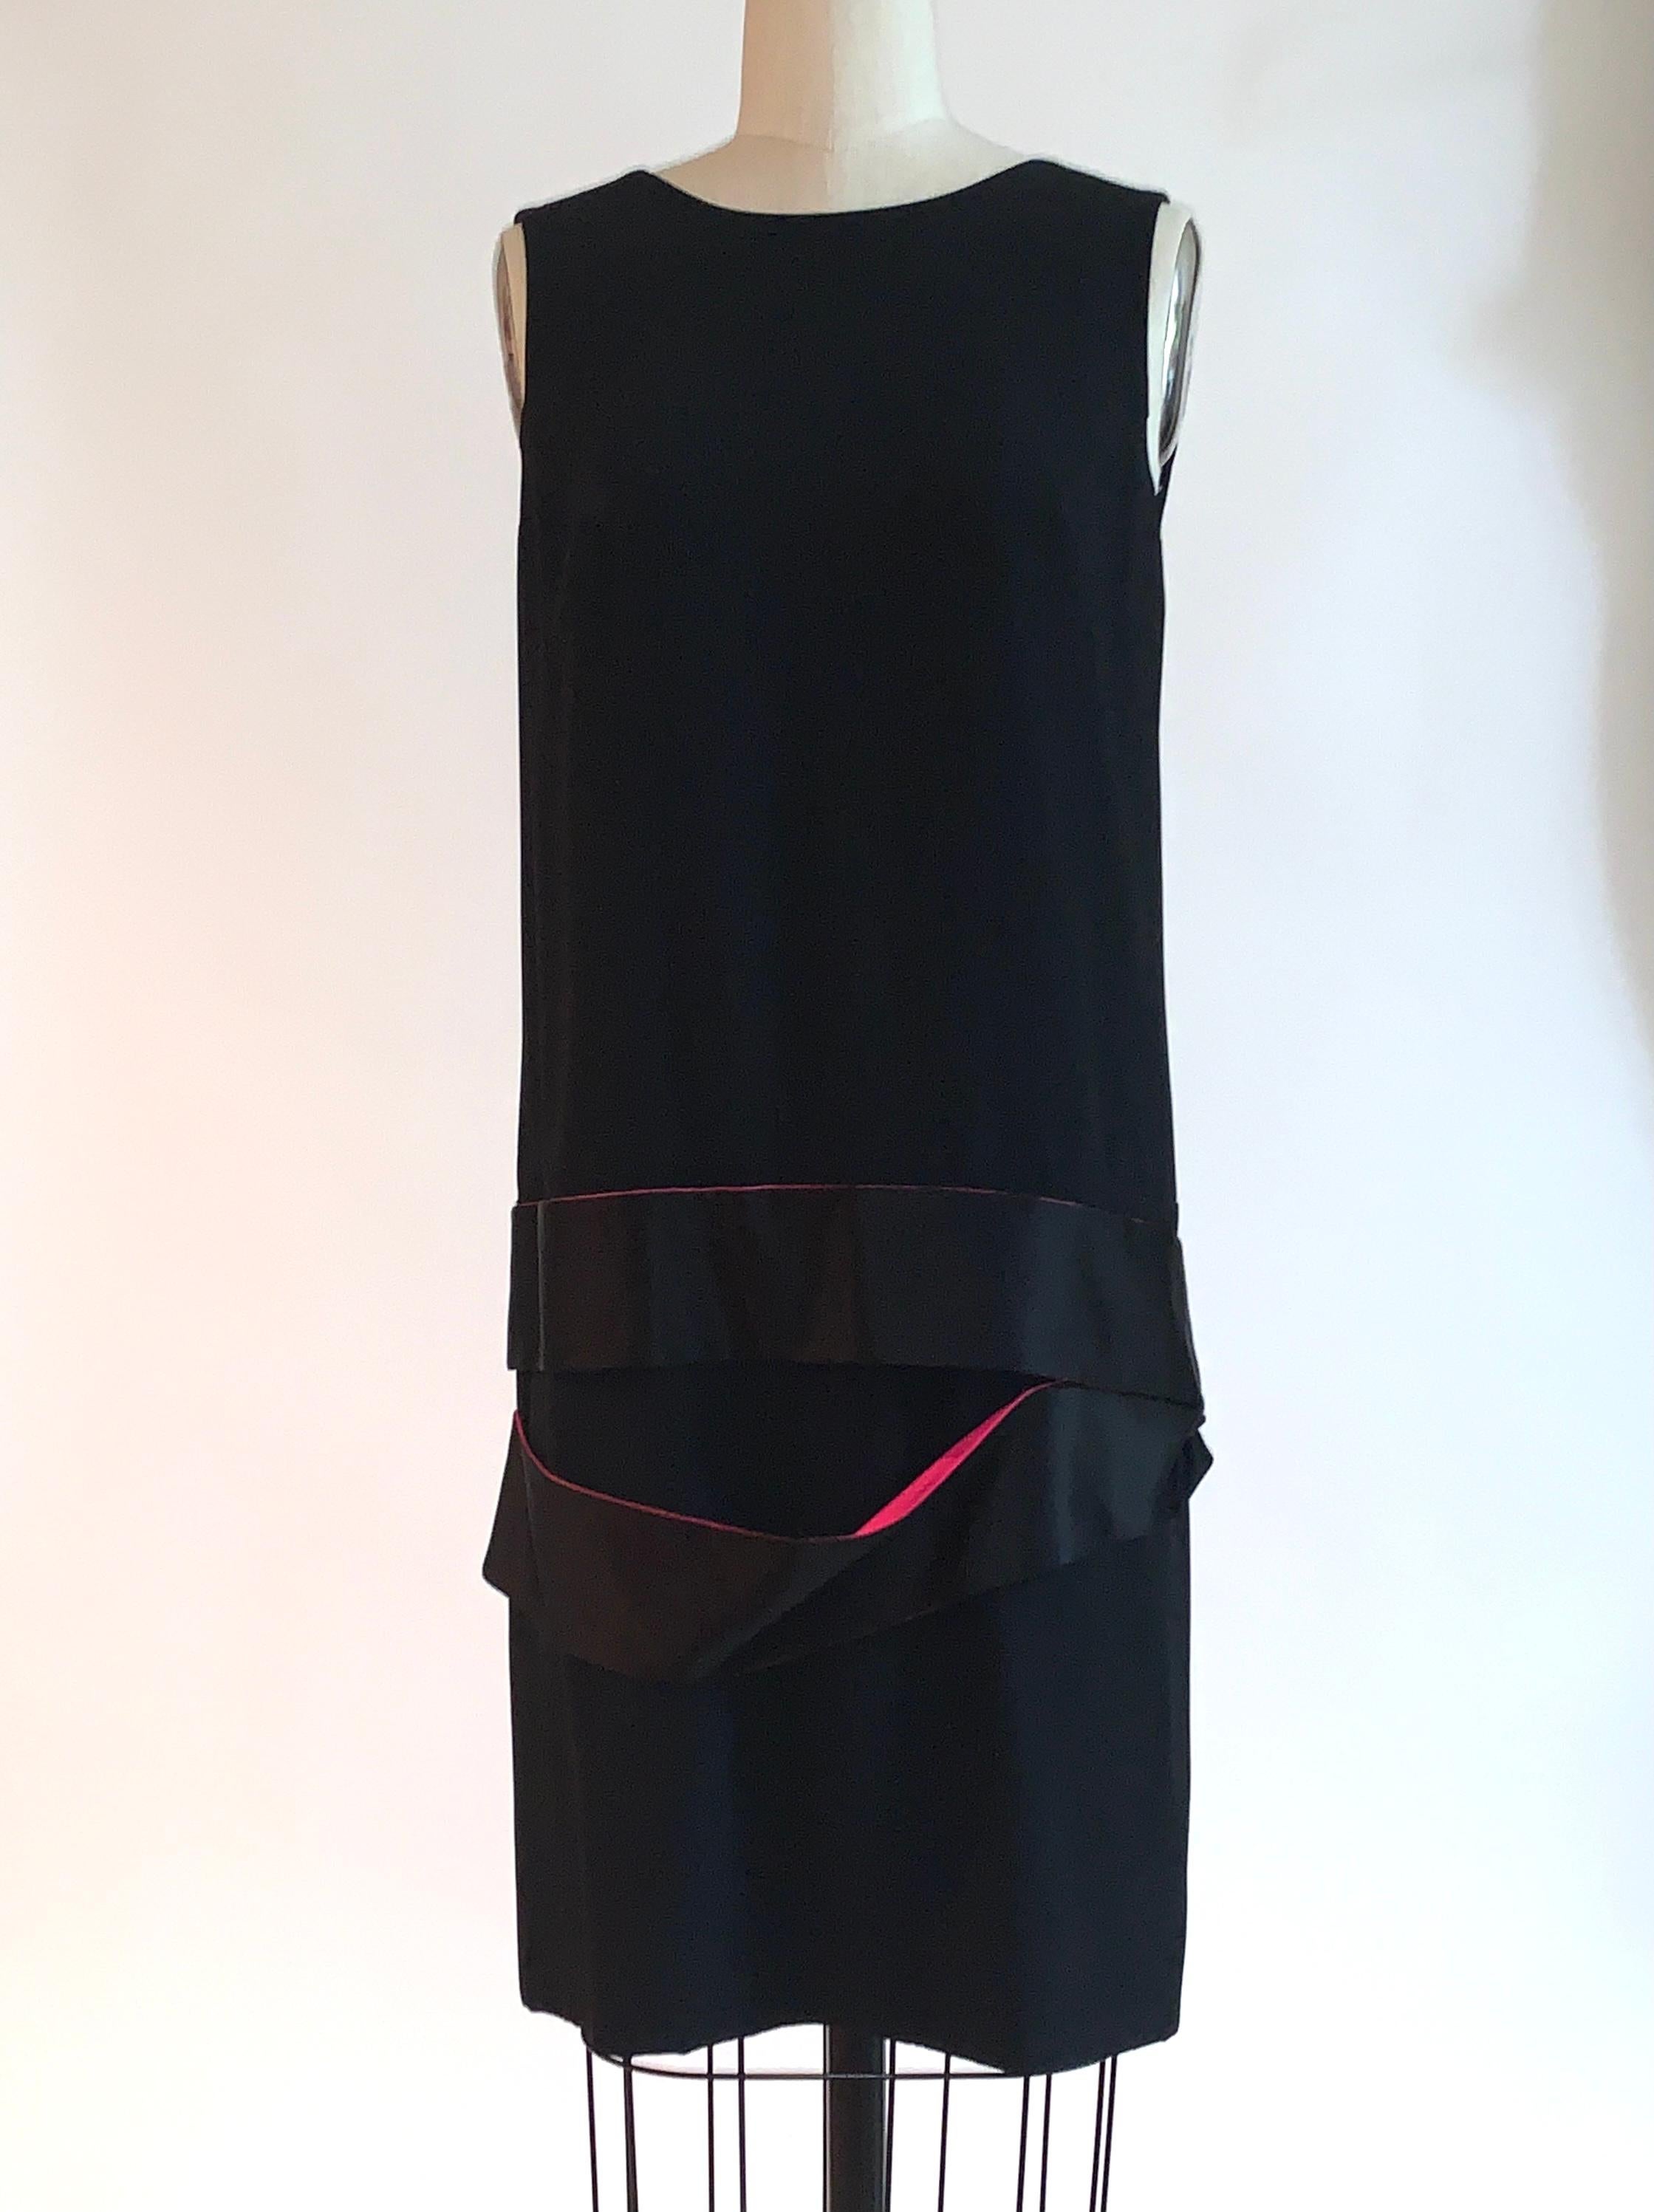 Alexander McQueen schwarzes ärmelloses Kleid mit tiefer Taille und schwarzen und rosa Seidenbändern an der Taille. Aus der Kollektion 2008, die als Hommage an McQueens Mentorin Isabella Blow entworfen wurde. Rückenreißverschluss und Haken und Ösen.